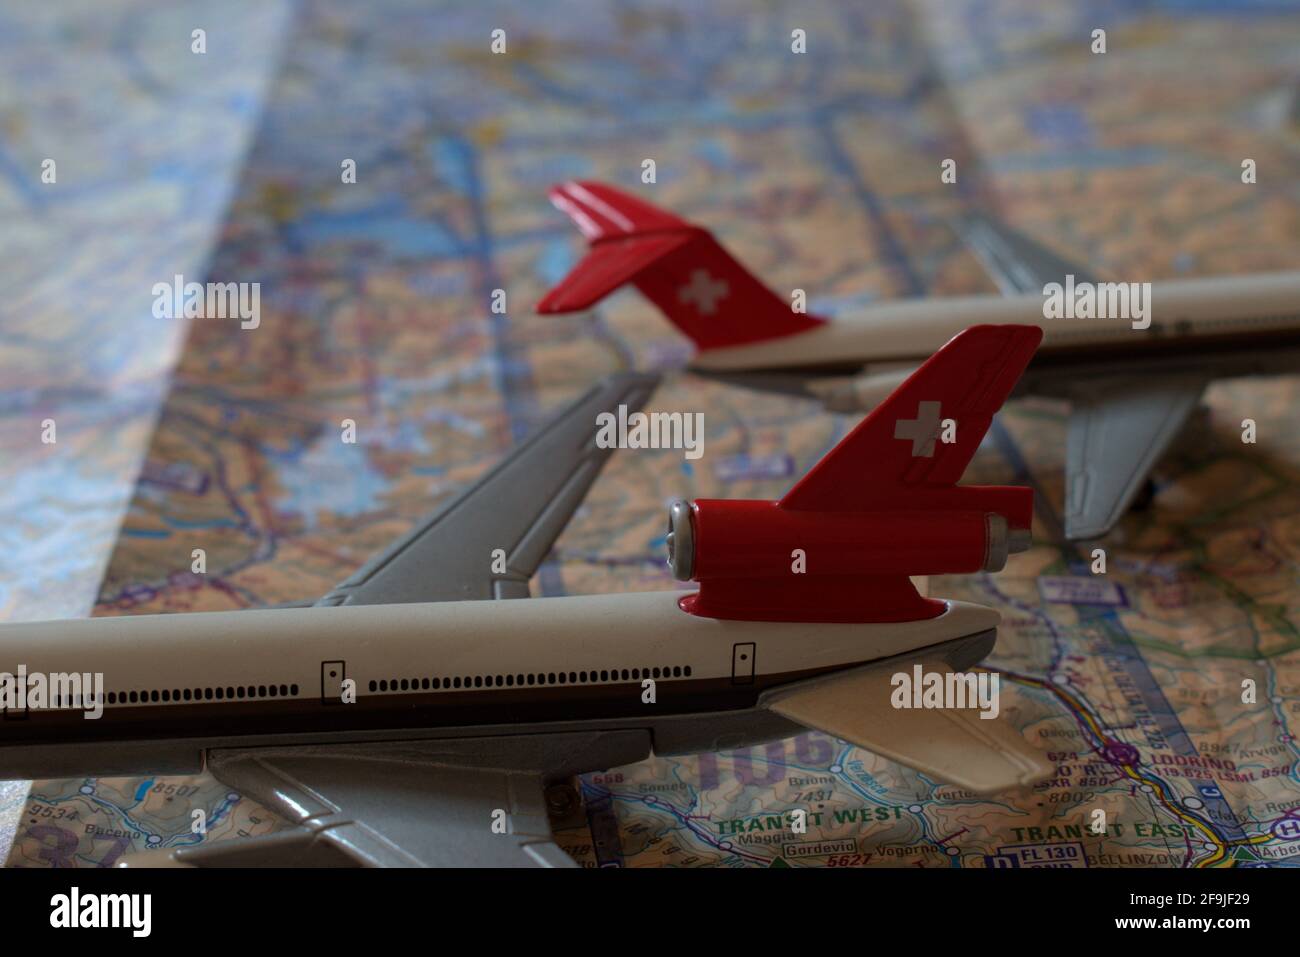 Jouets d'avion de Swissair placés sur une carte de navigation aérienne 25.3.2021 Banque D'Images